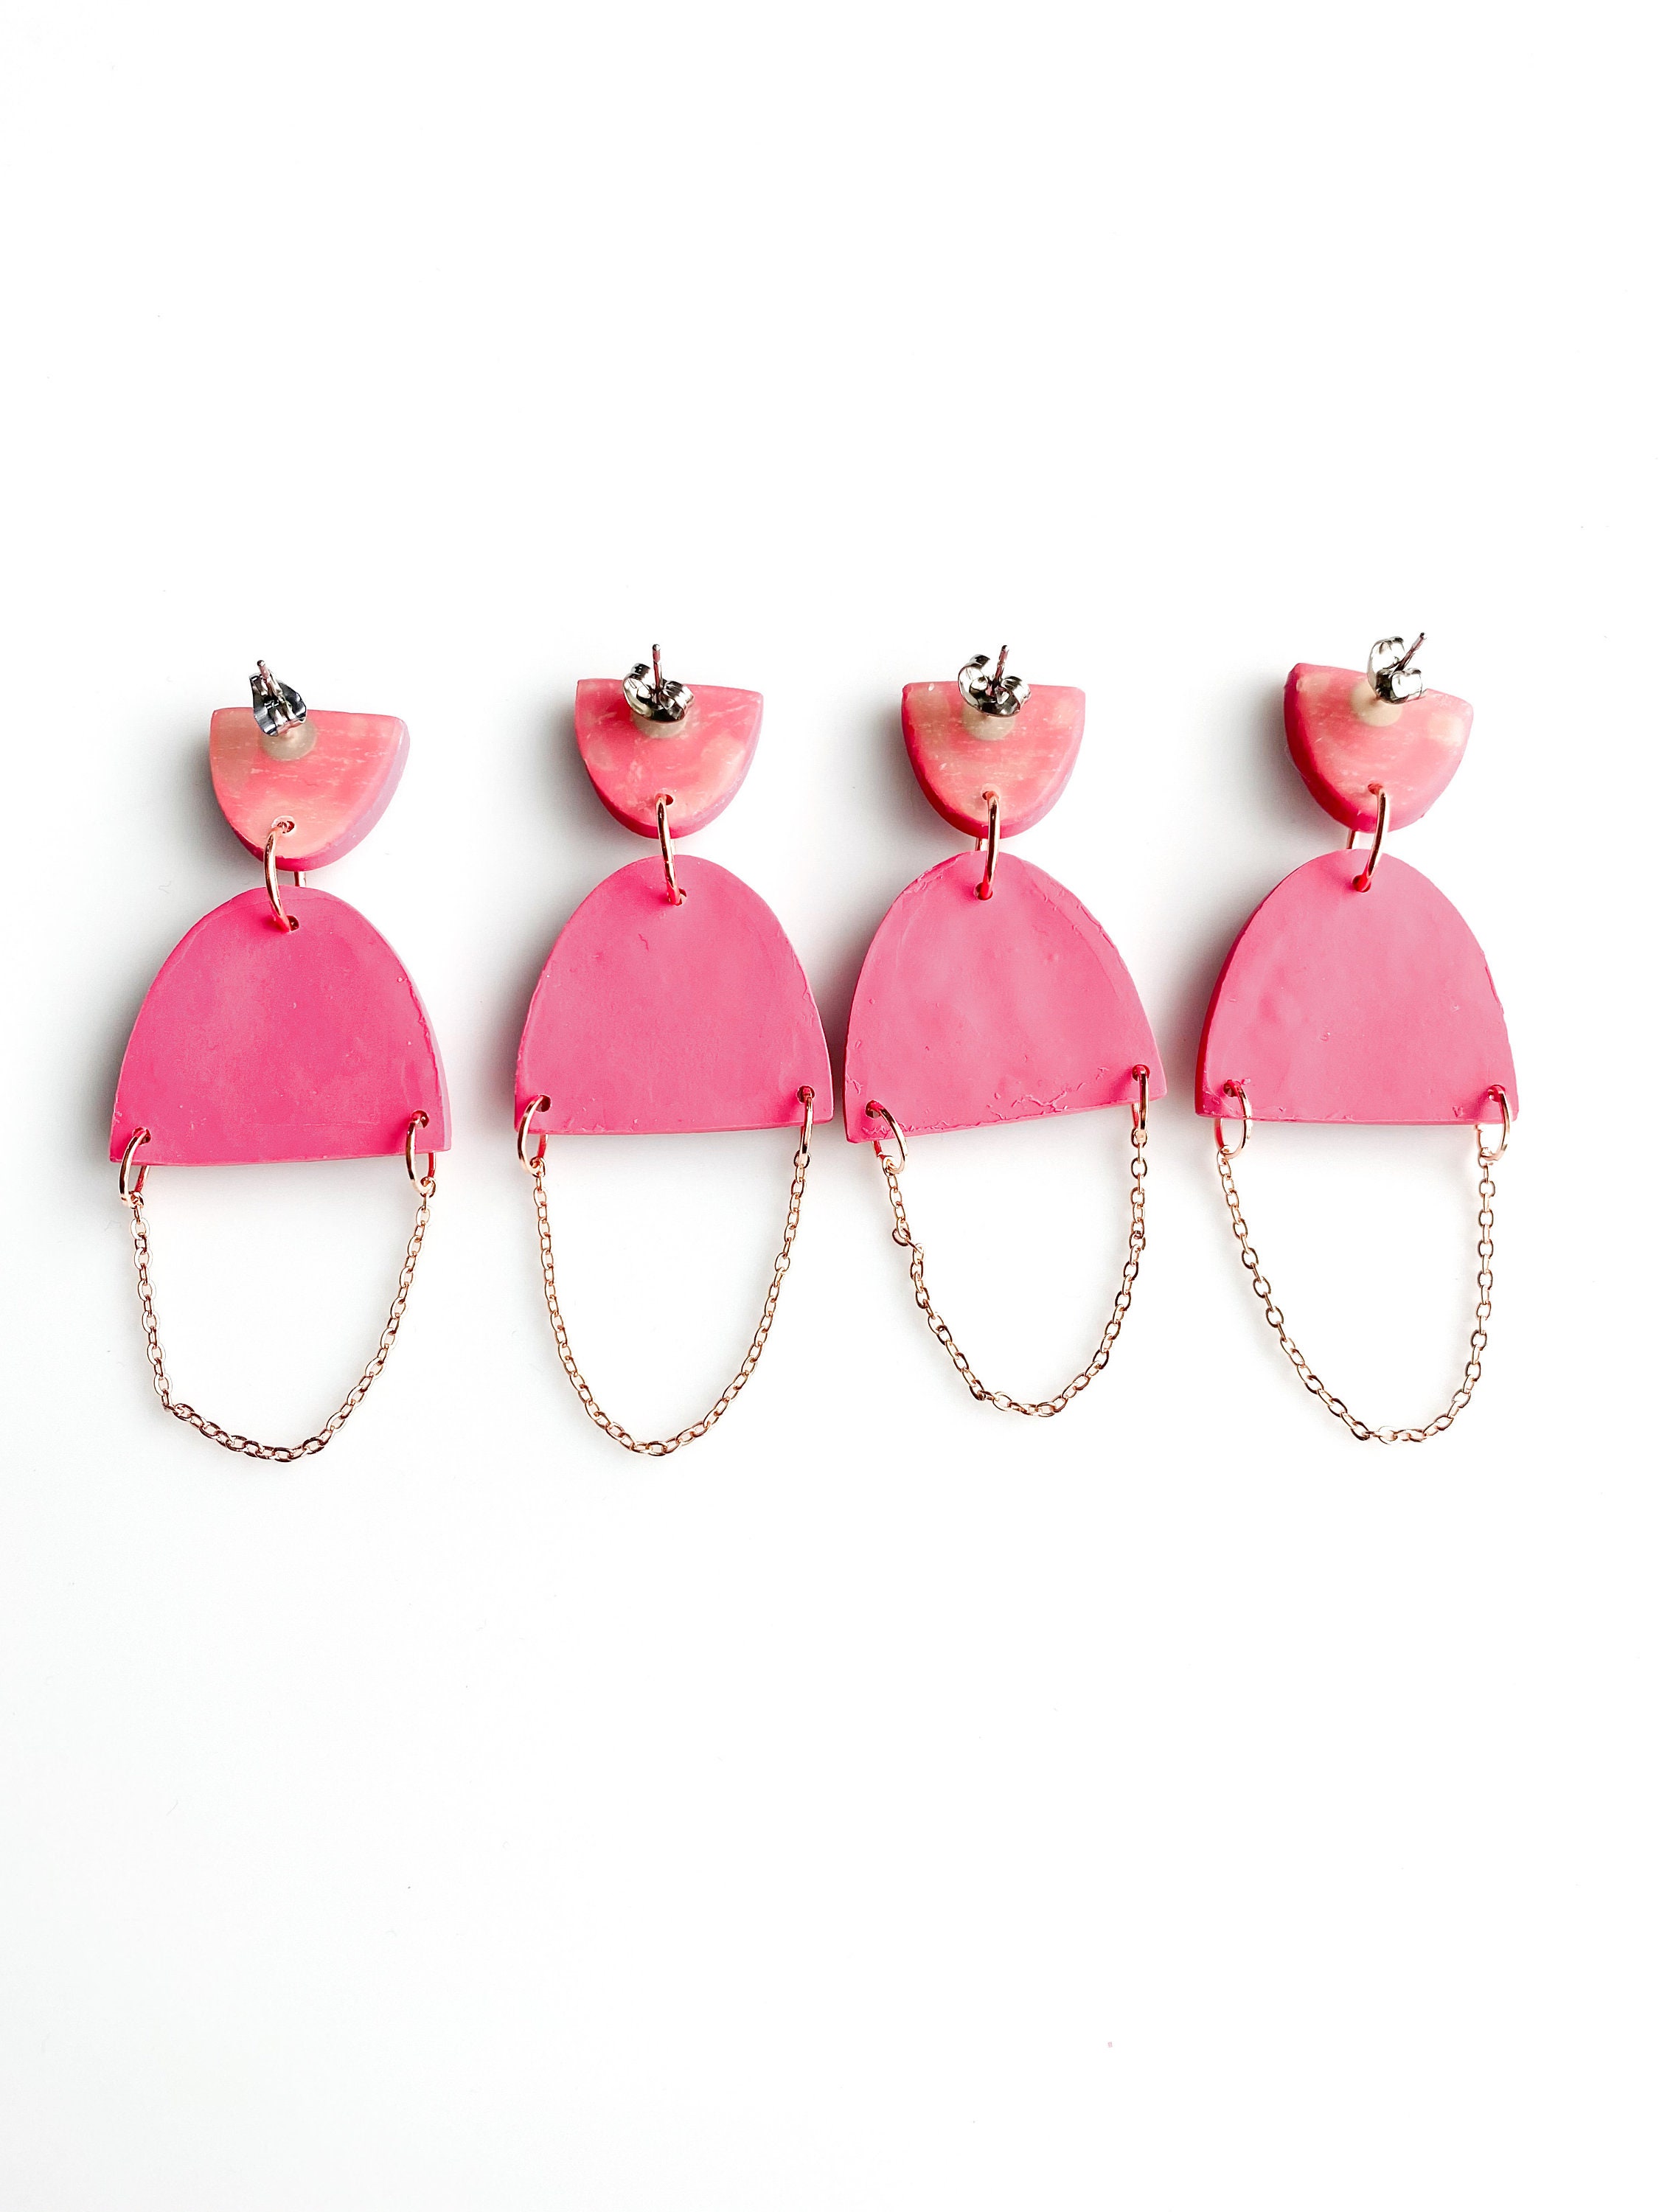 Pink earrings dangle chain earrings for women colorful | Etsy